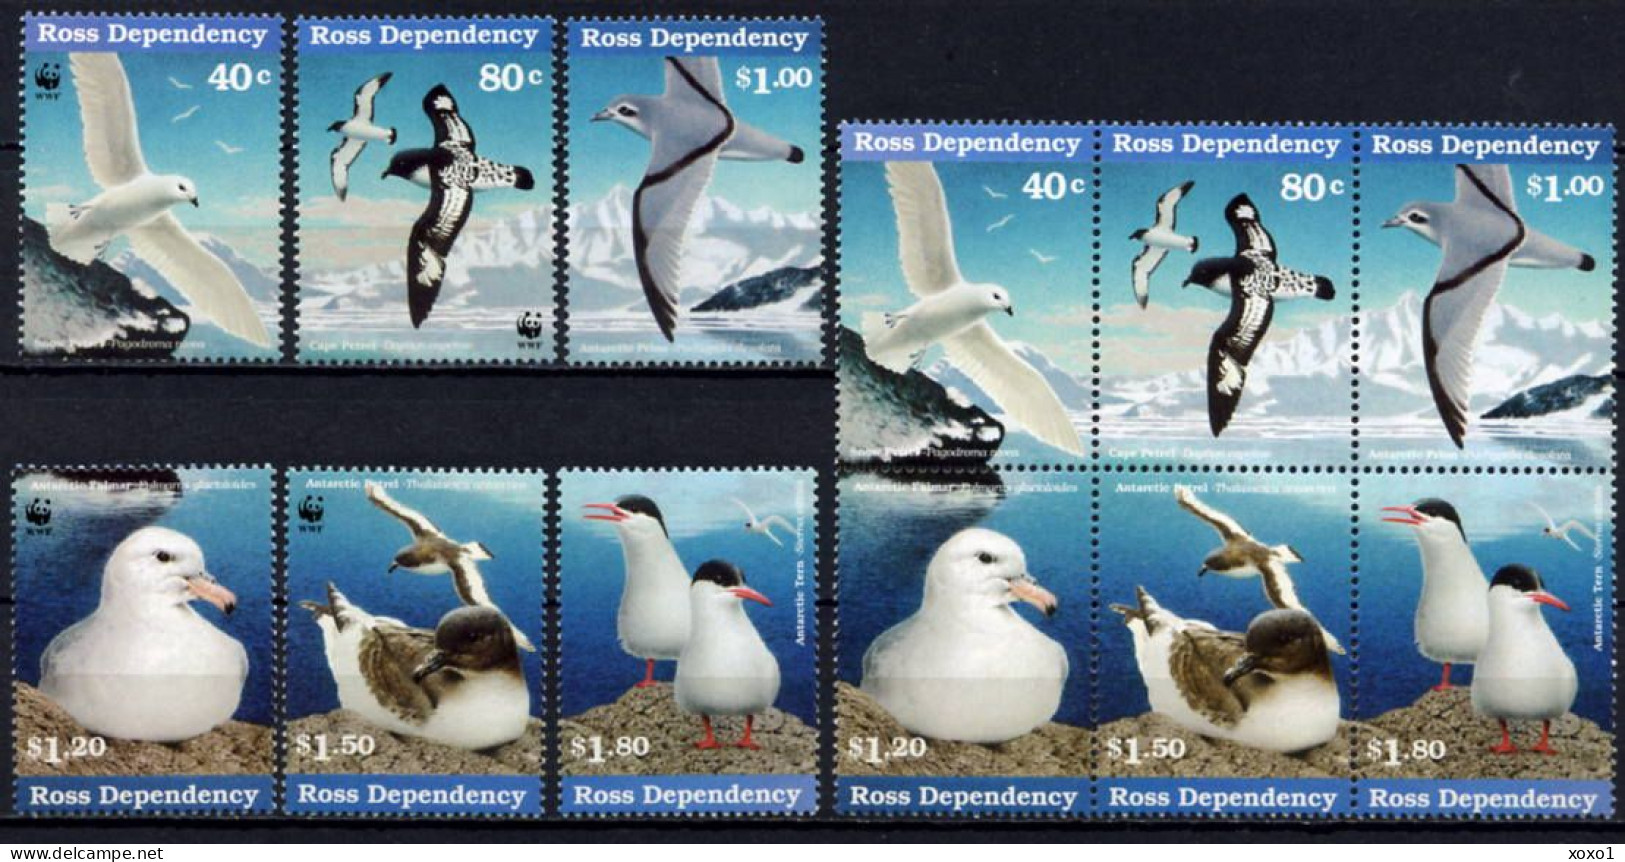 Ross 1997 New Zealand MiNr. 44 - 53  Neuseeland Ross-Gebiet WWF BIRDS 12v MNH** 53,00 € - Antarktischen Tierwelt